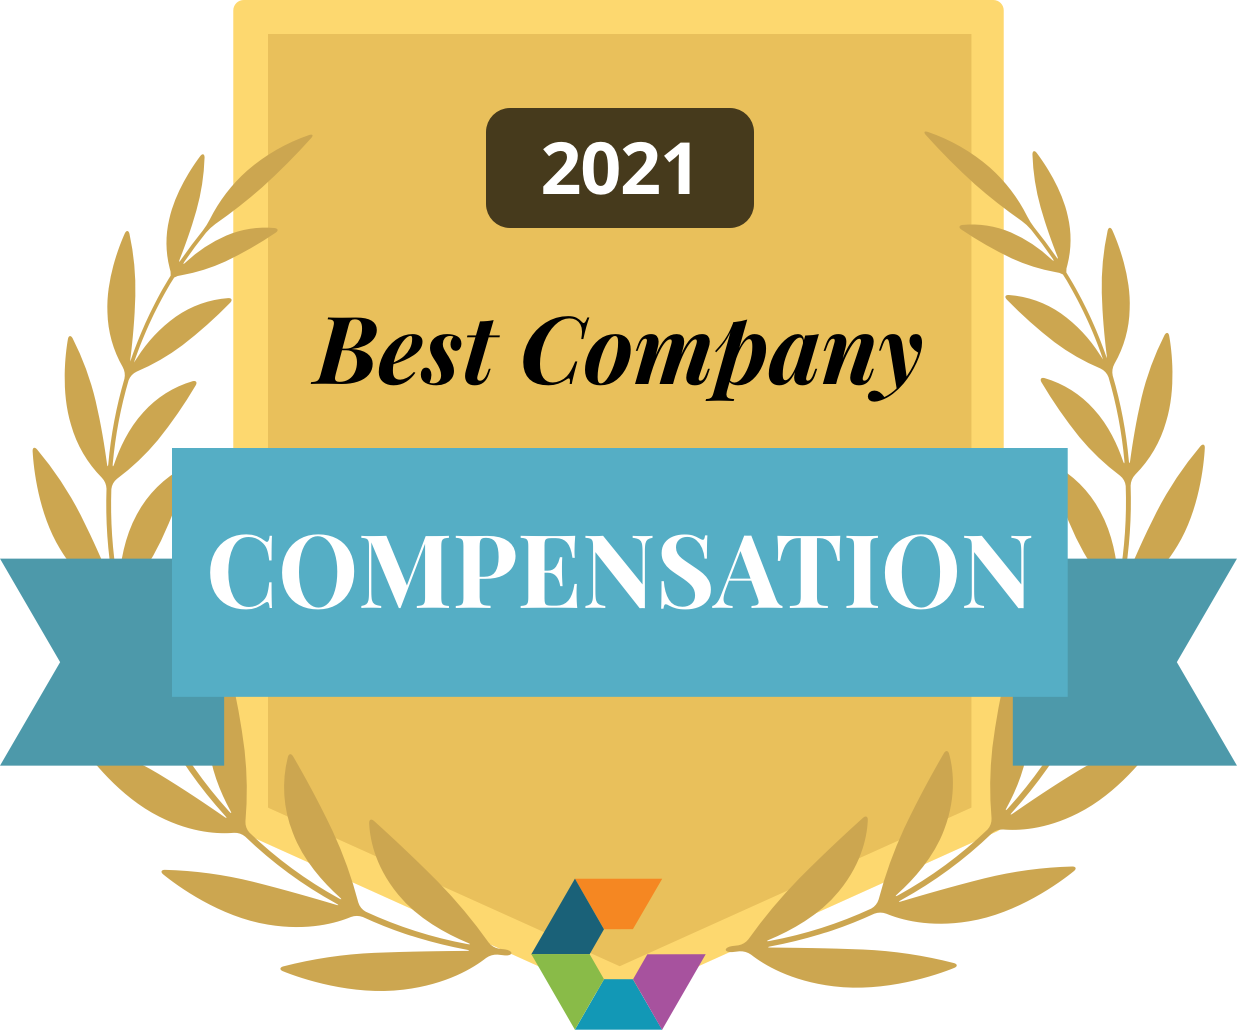 Comparably Award | Compensation 2021 | Smartsheet